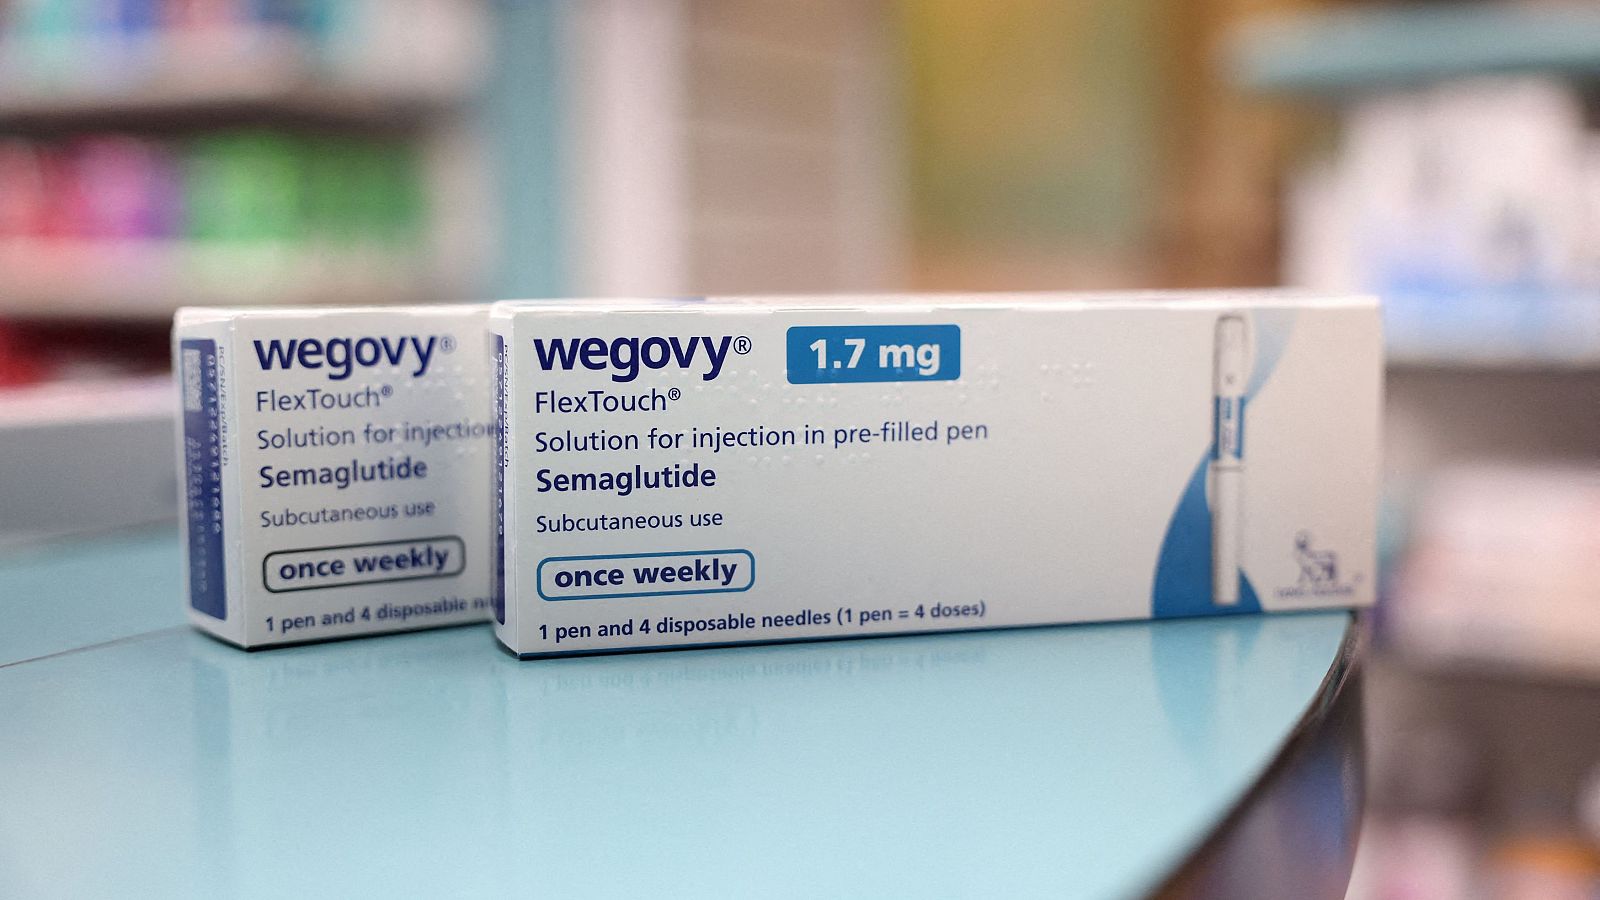 Monserrat Folch, médica nutricionista: el Wegovy "no deja de ser un fármaco, no podemos frivolizar con el tratamiento"